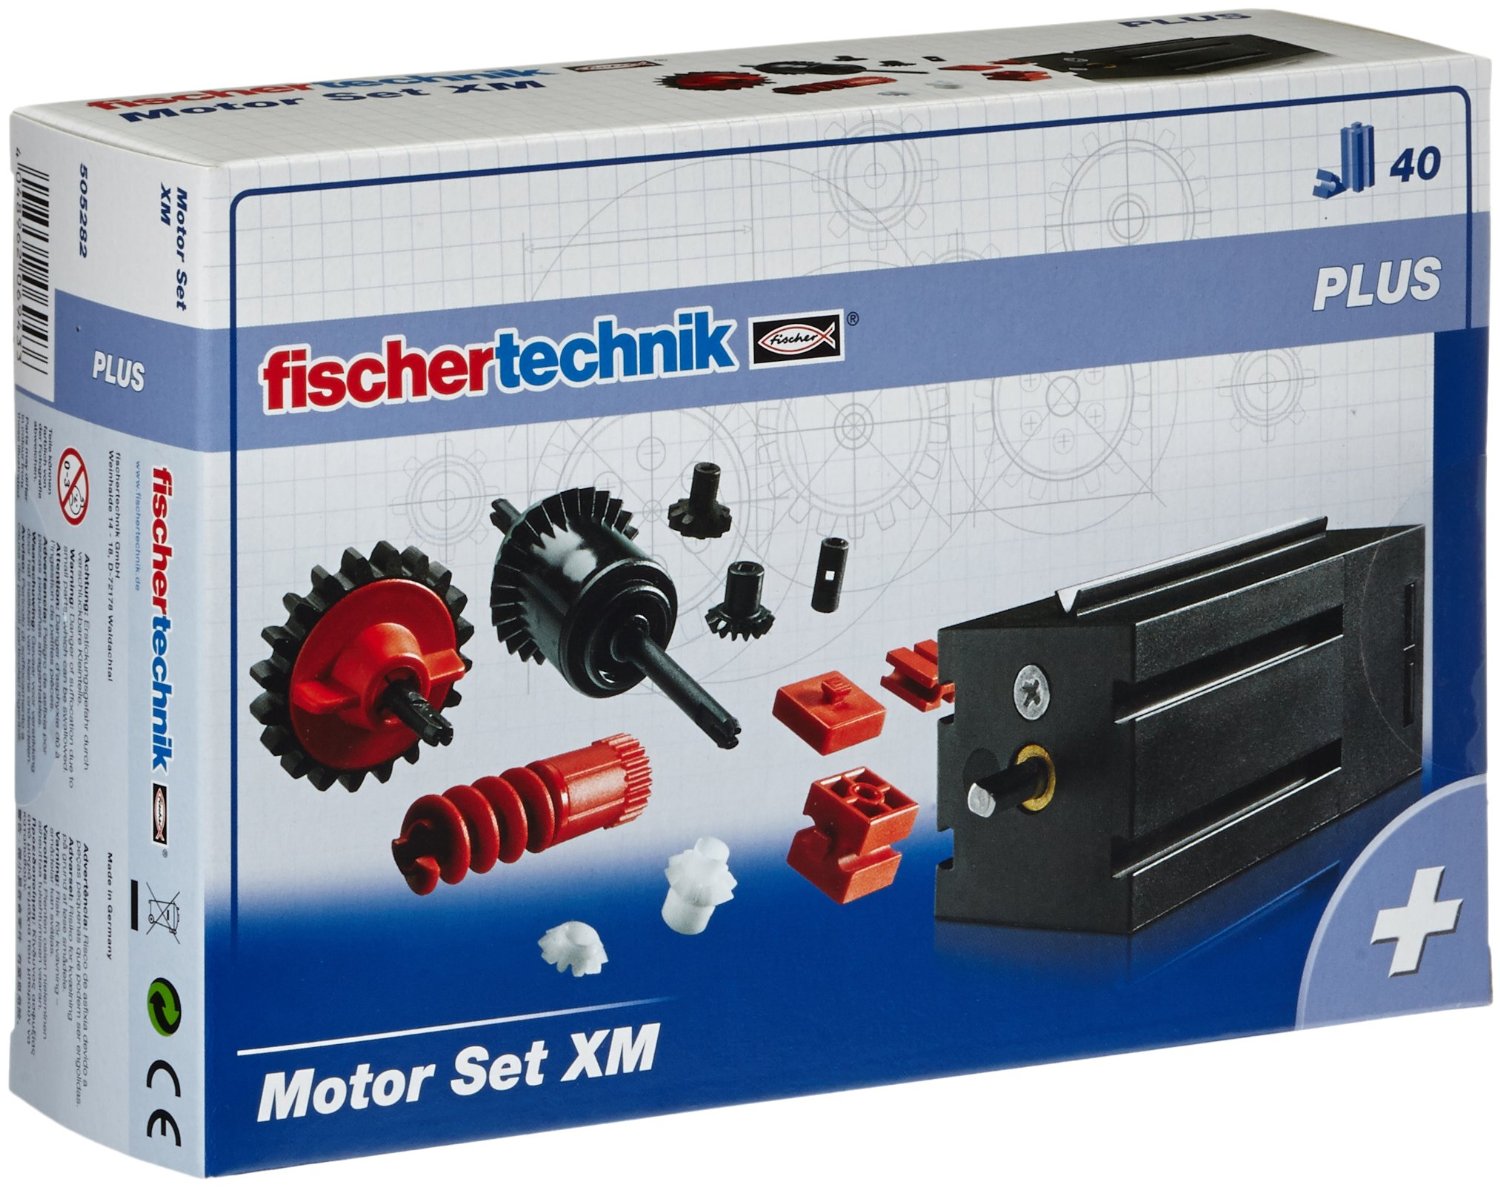 fischertechnik 505282 - Motor Set XM (Plus)